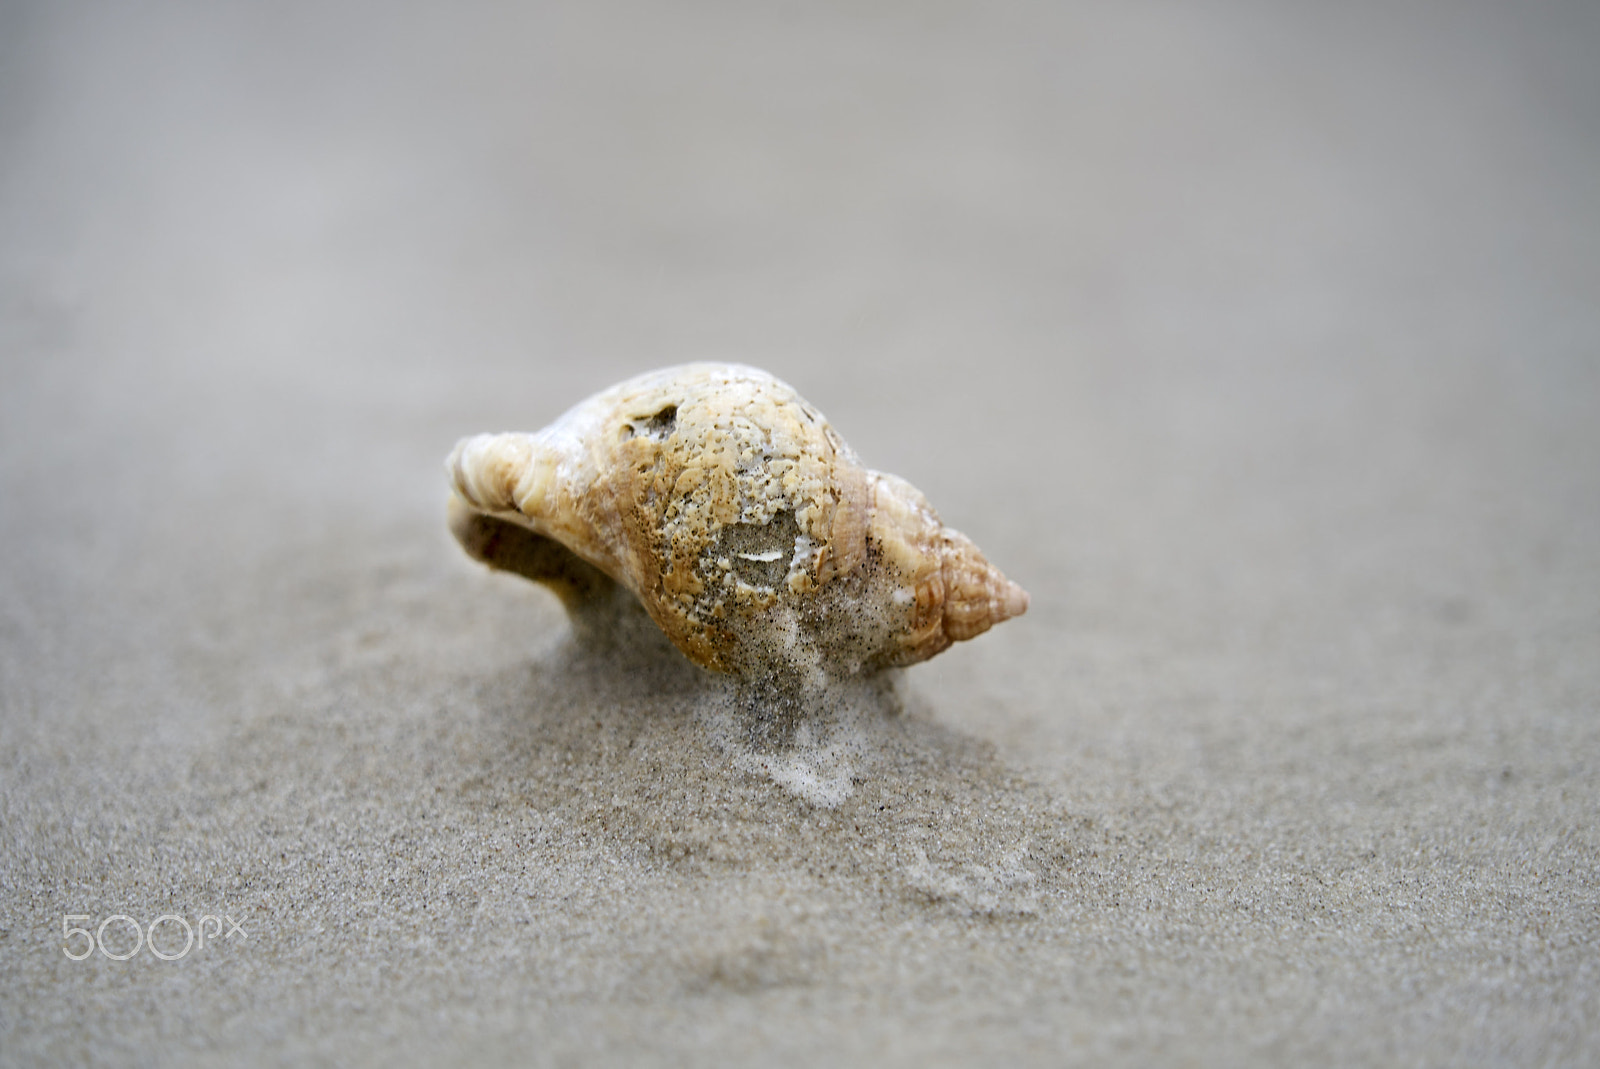 Sony a7S sample photo. Empty snail house on a sandy beach photography